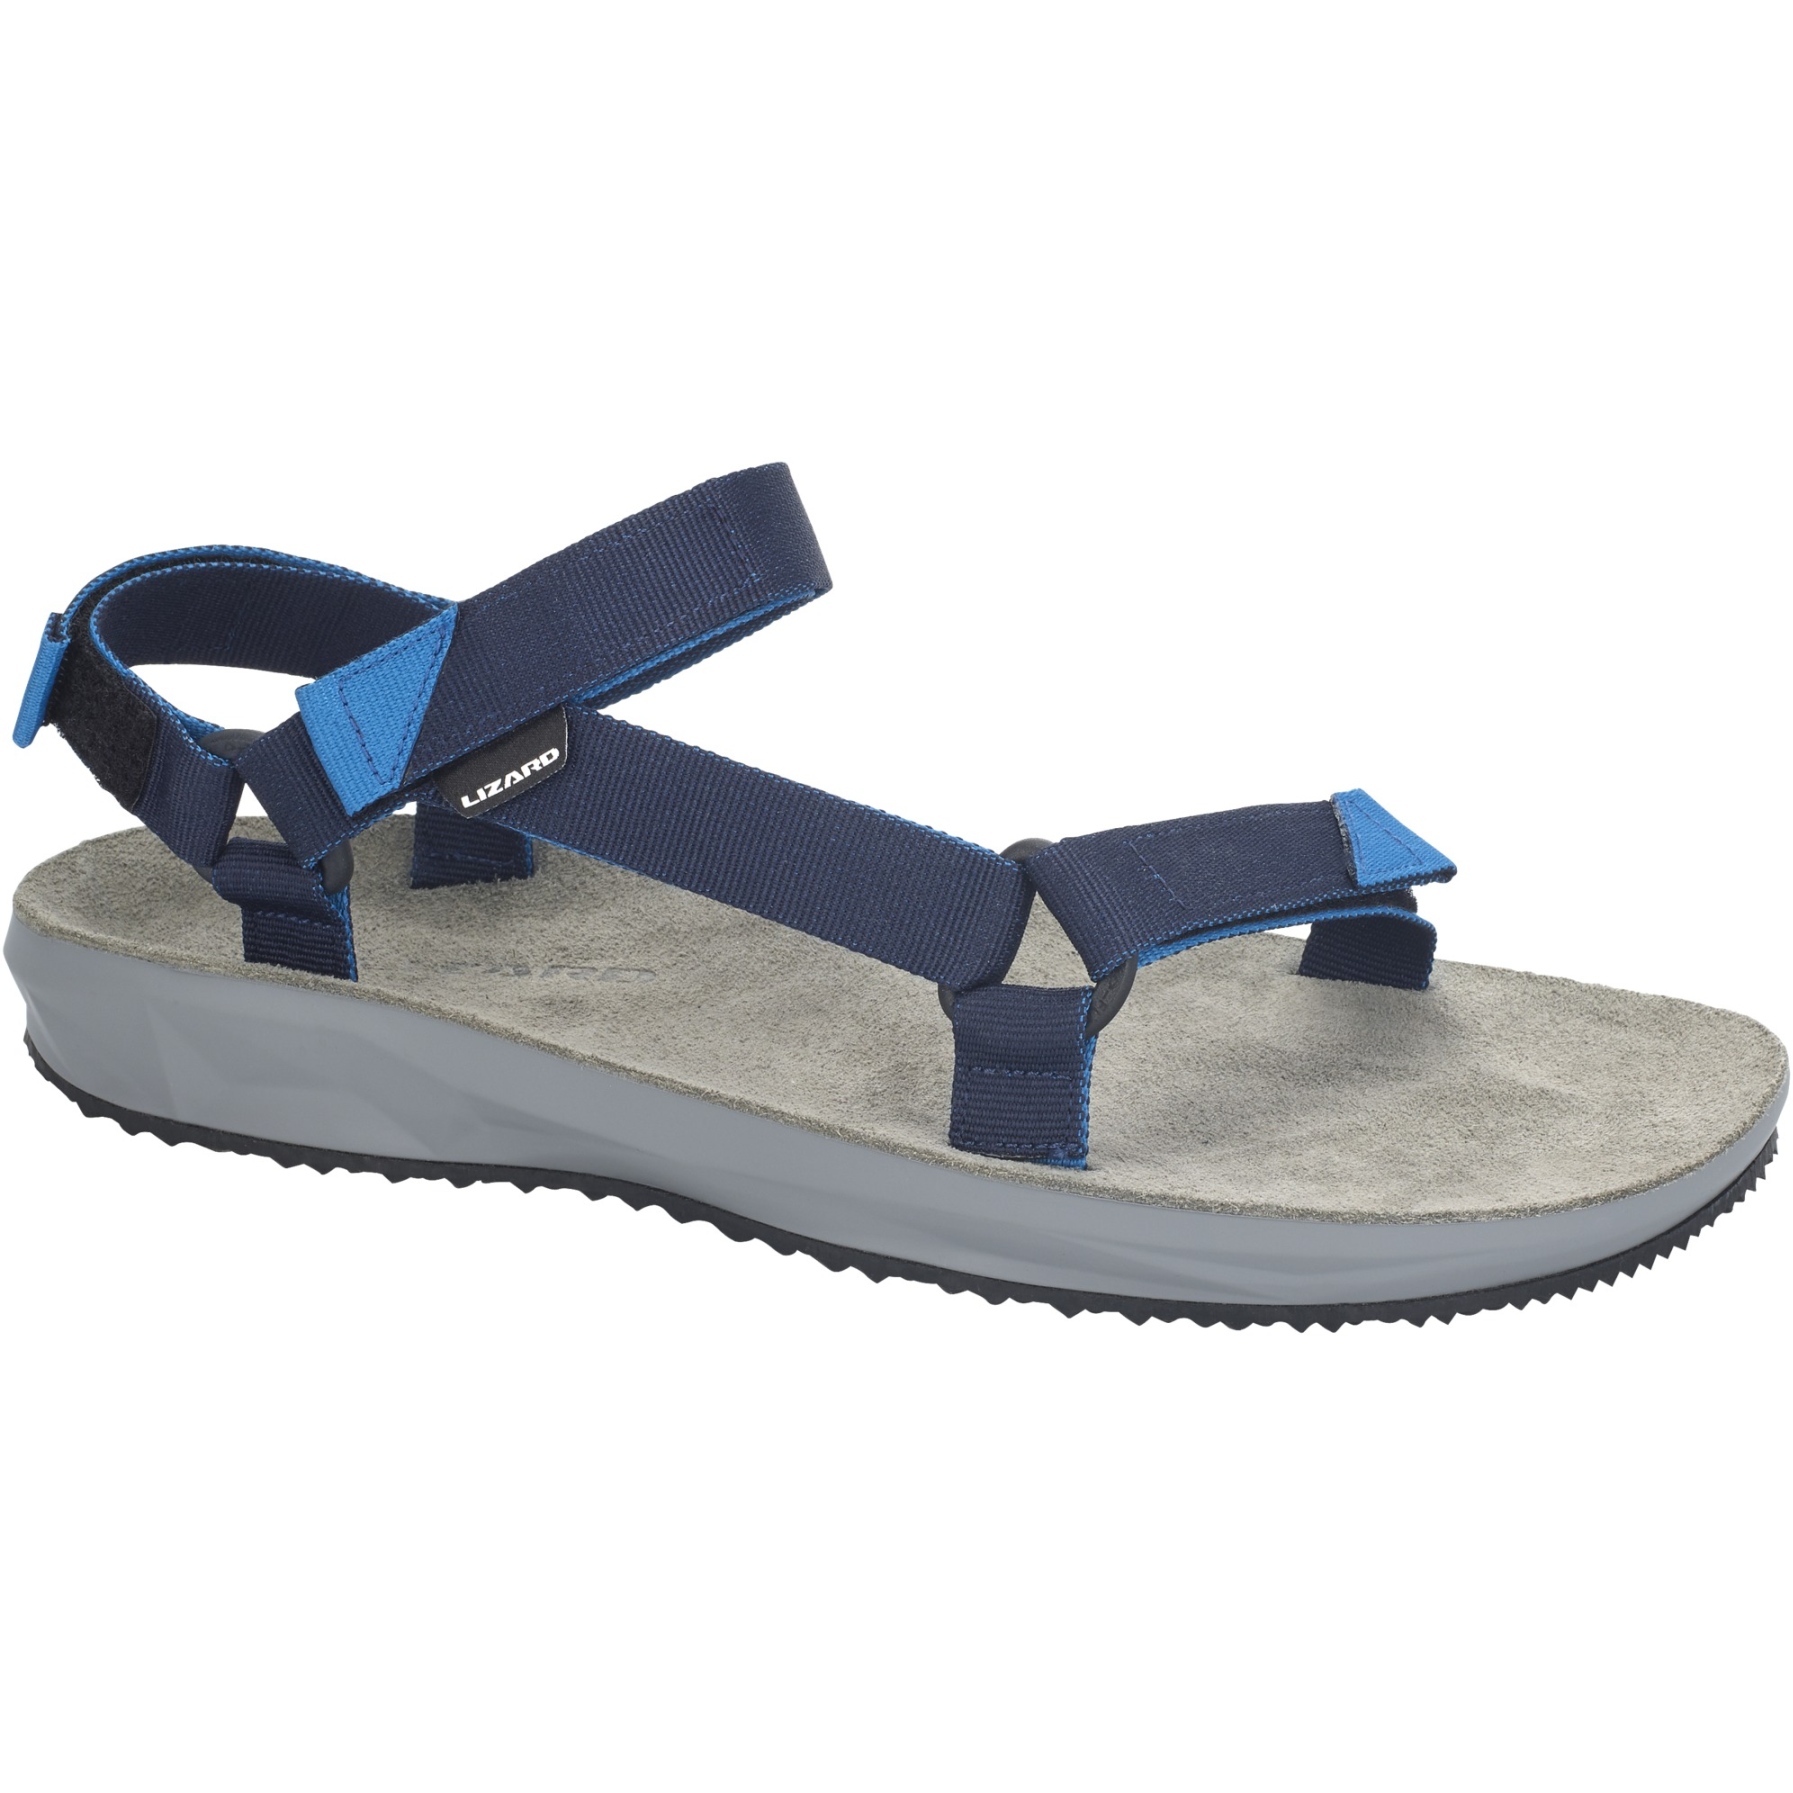 Productfoto van Lizard Footwear Hike Sandals - midnight blue/atlantic blue